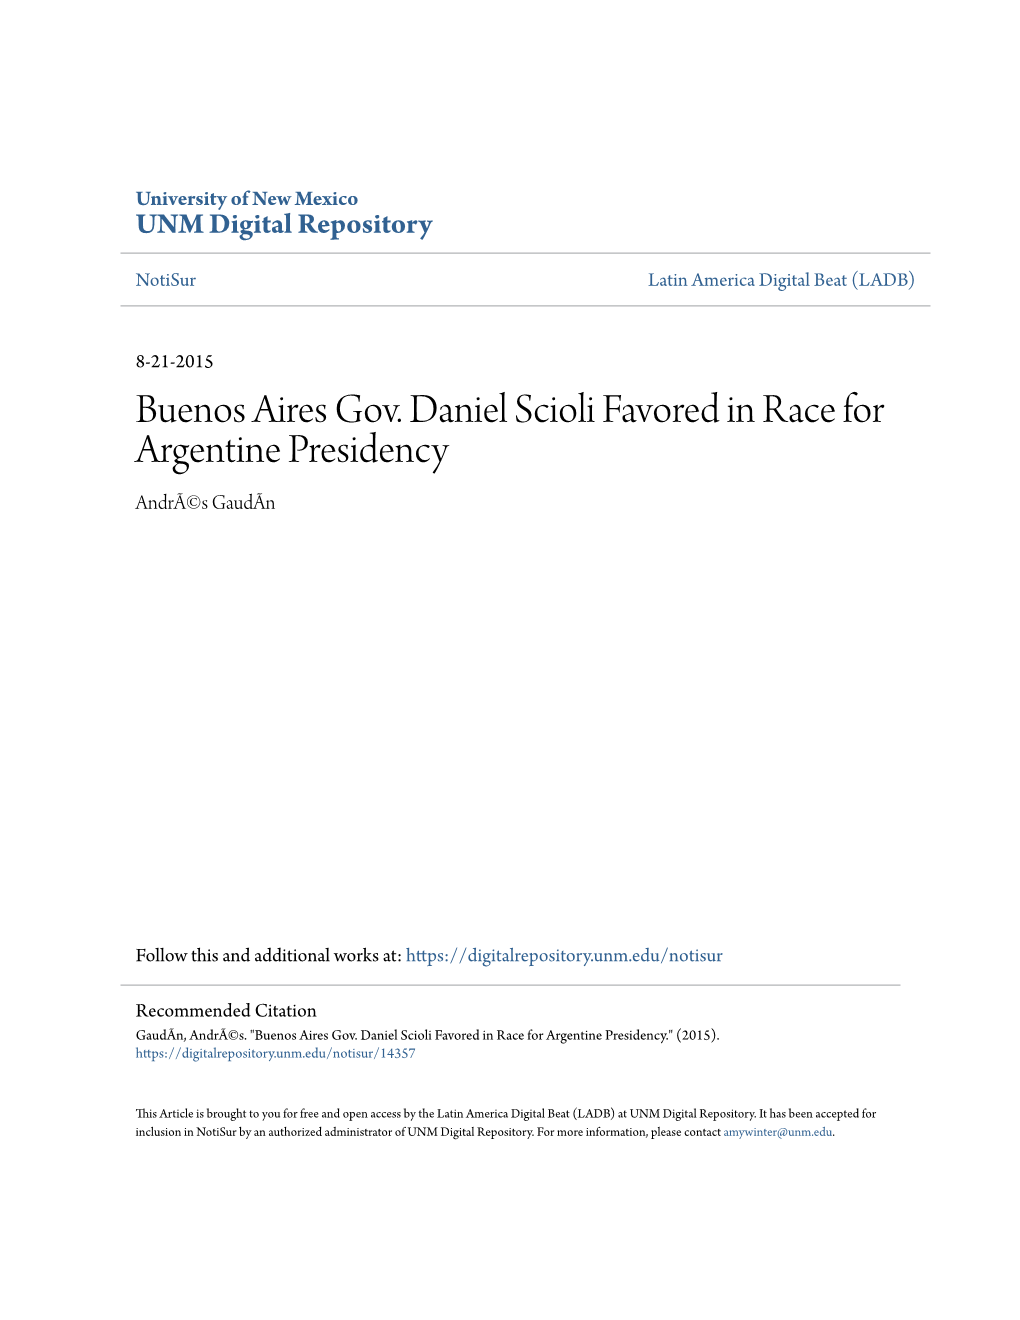 Buenos Aires Gov. Daniel Scioli Favored in Race for Argentine Presidency Andrã©S Gaudãn